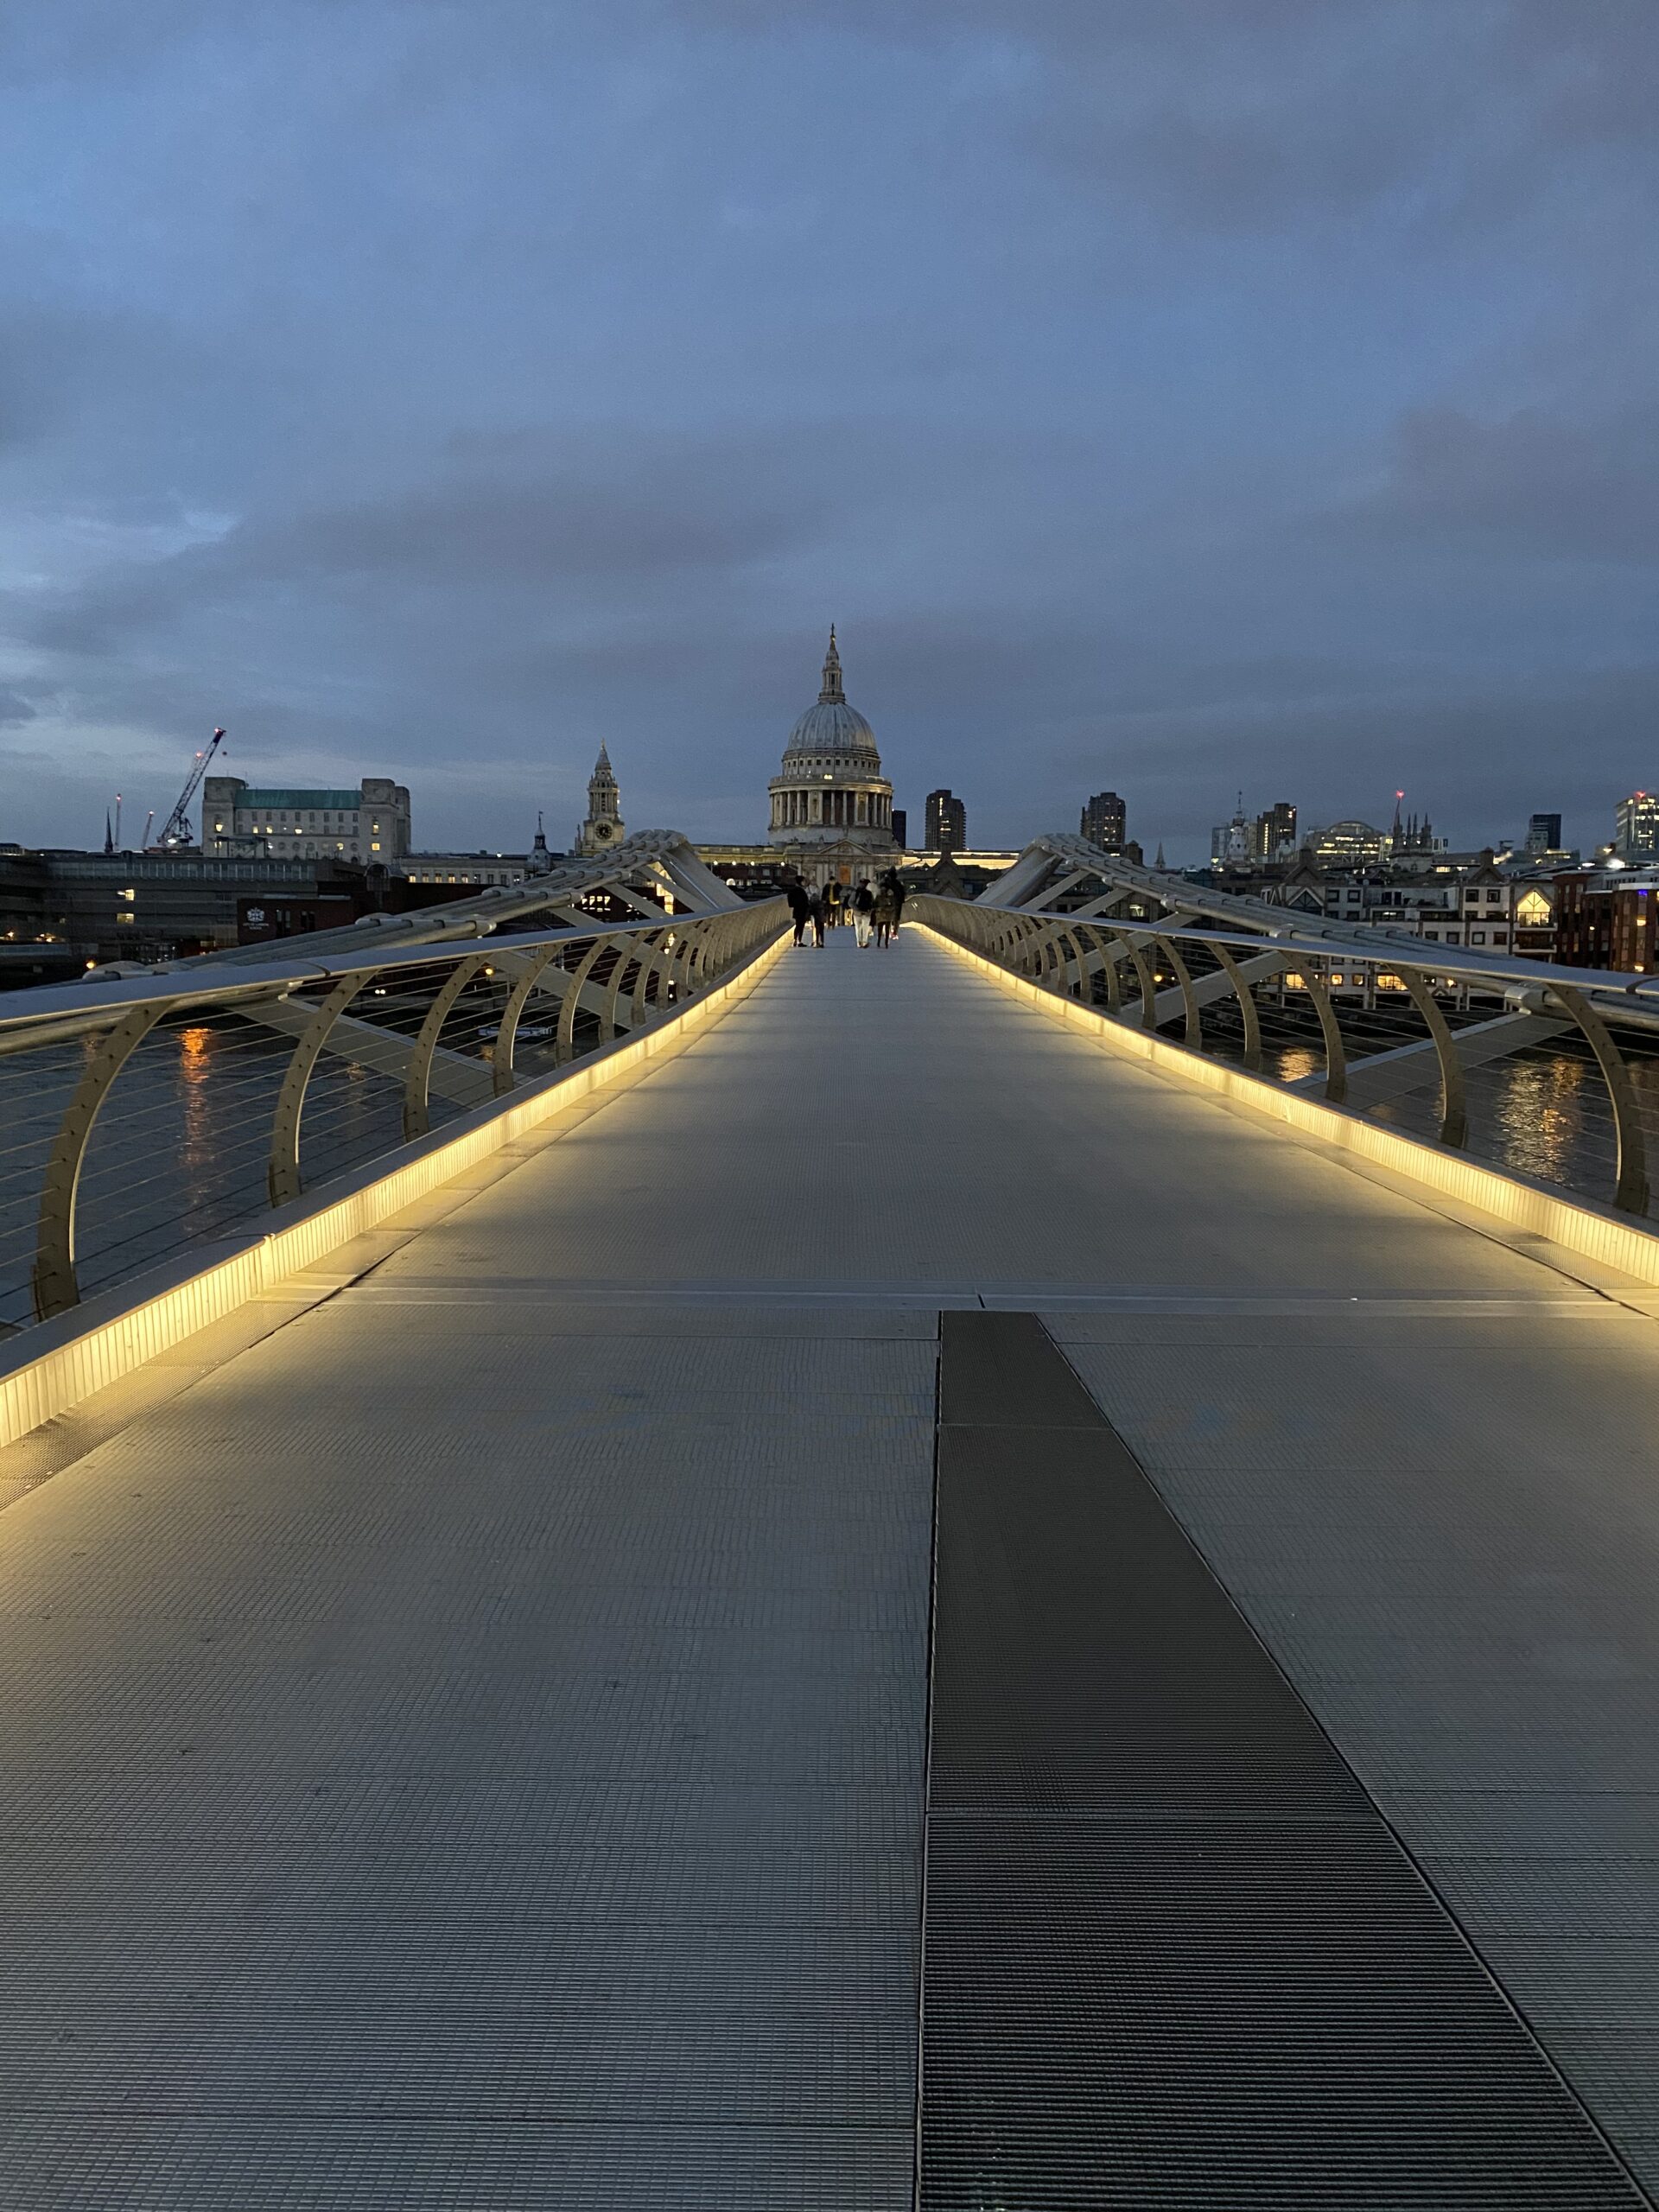 Millenium bridge at Night - lifewithbugo